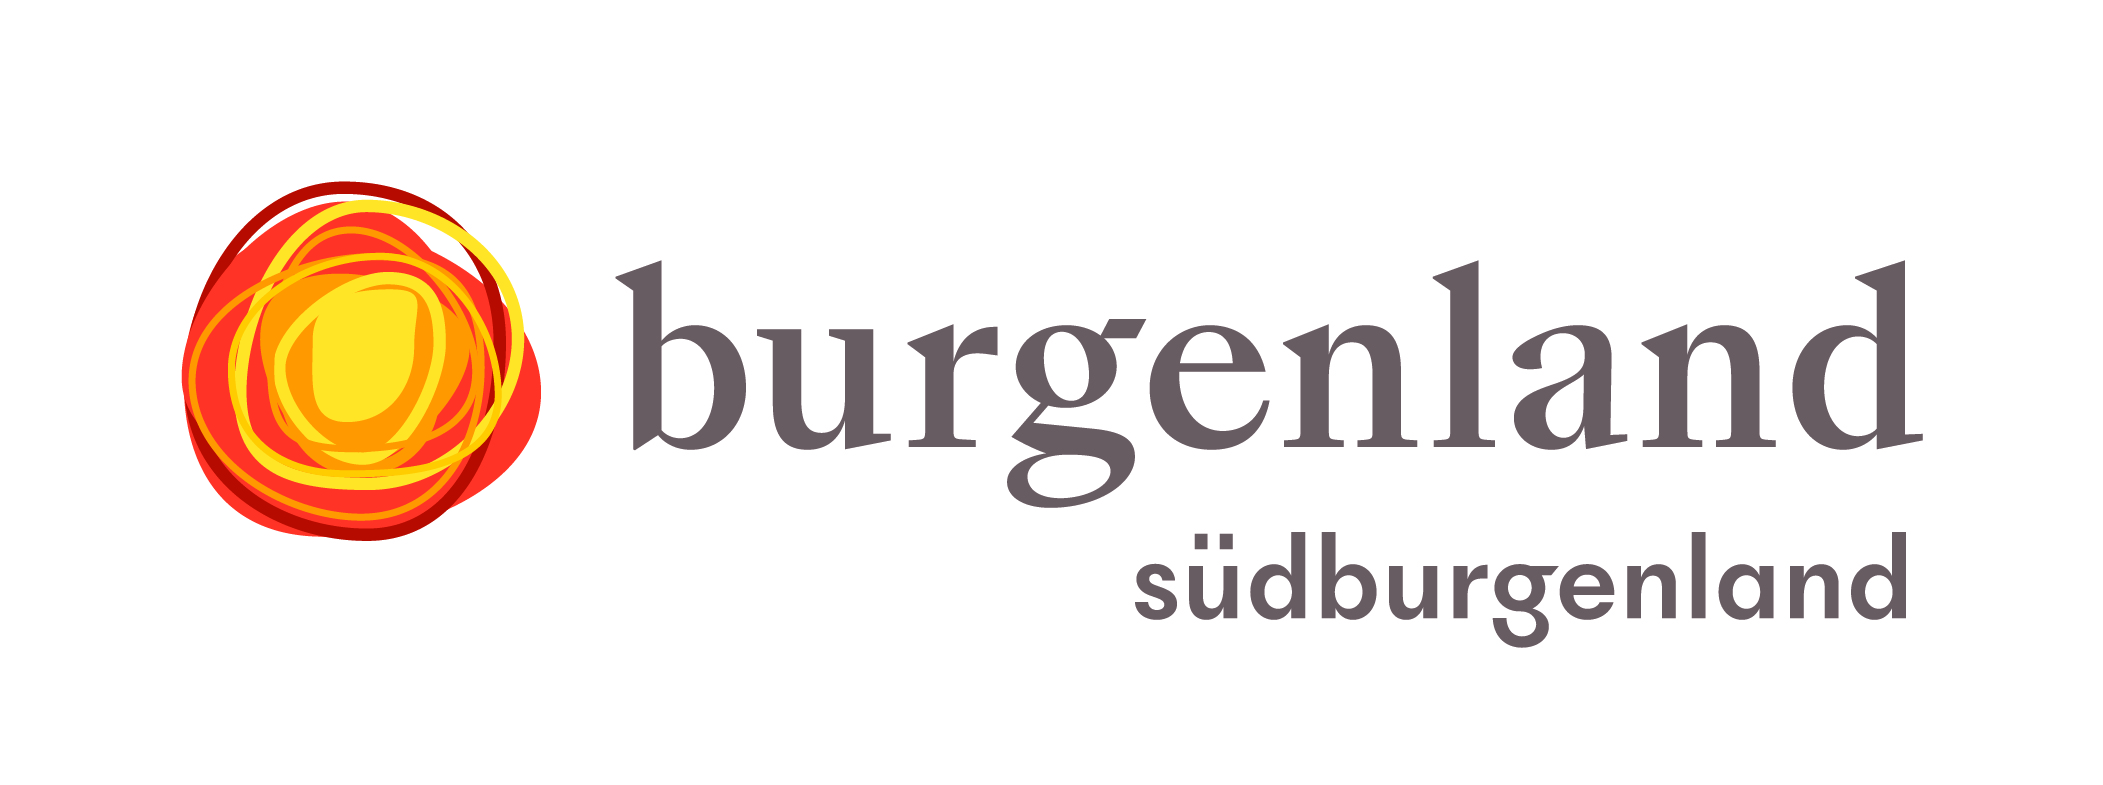 logos/marke_burgenland_logo_sb_pos.jpg Logo